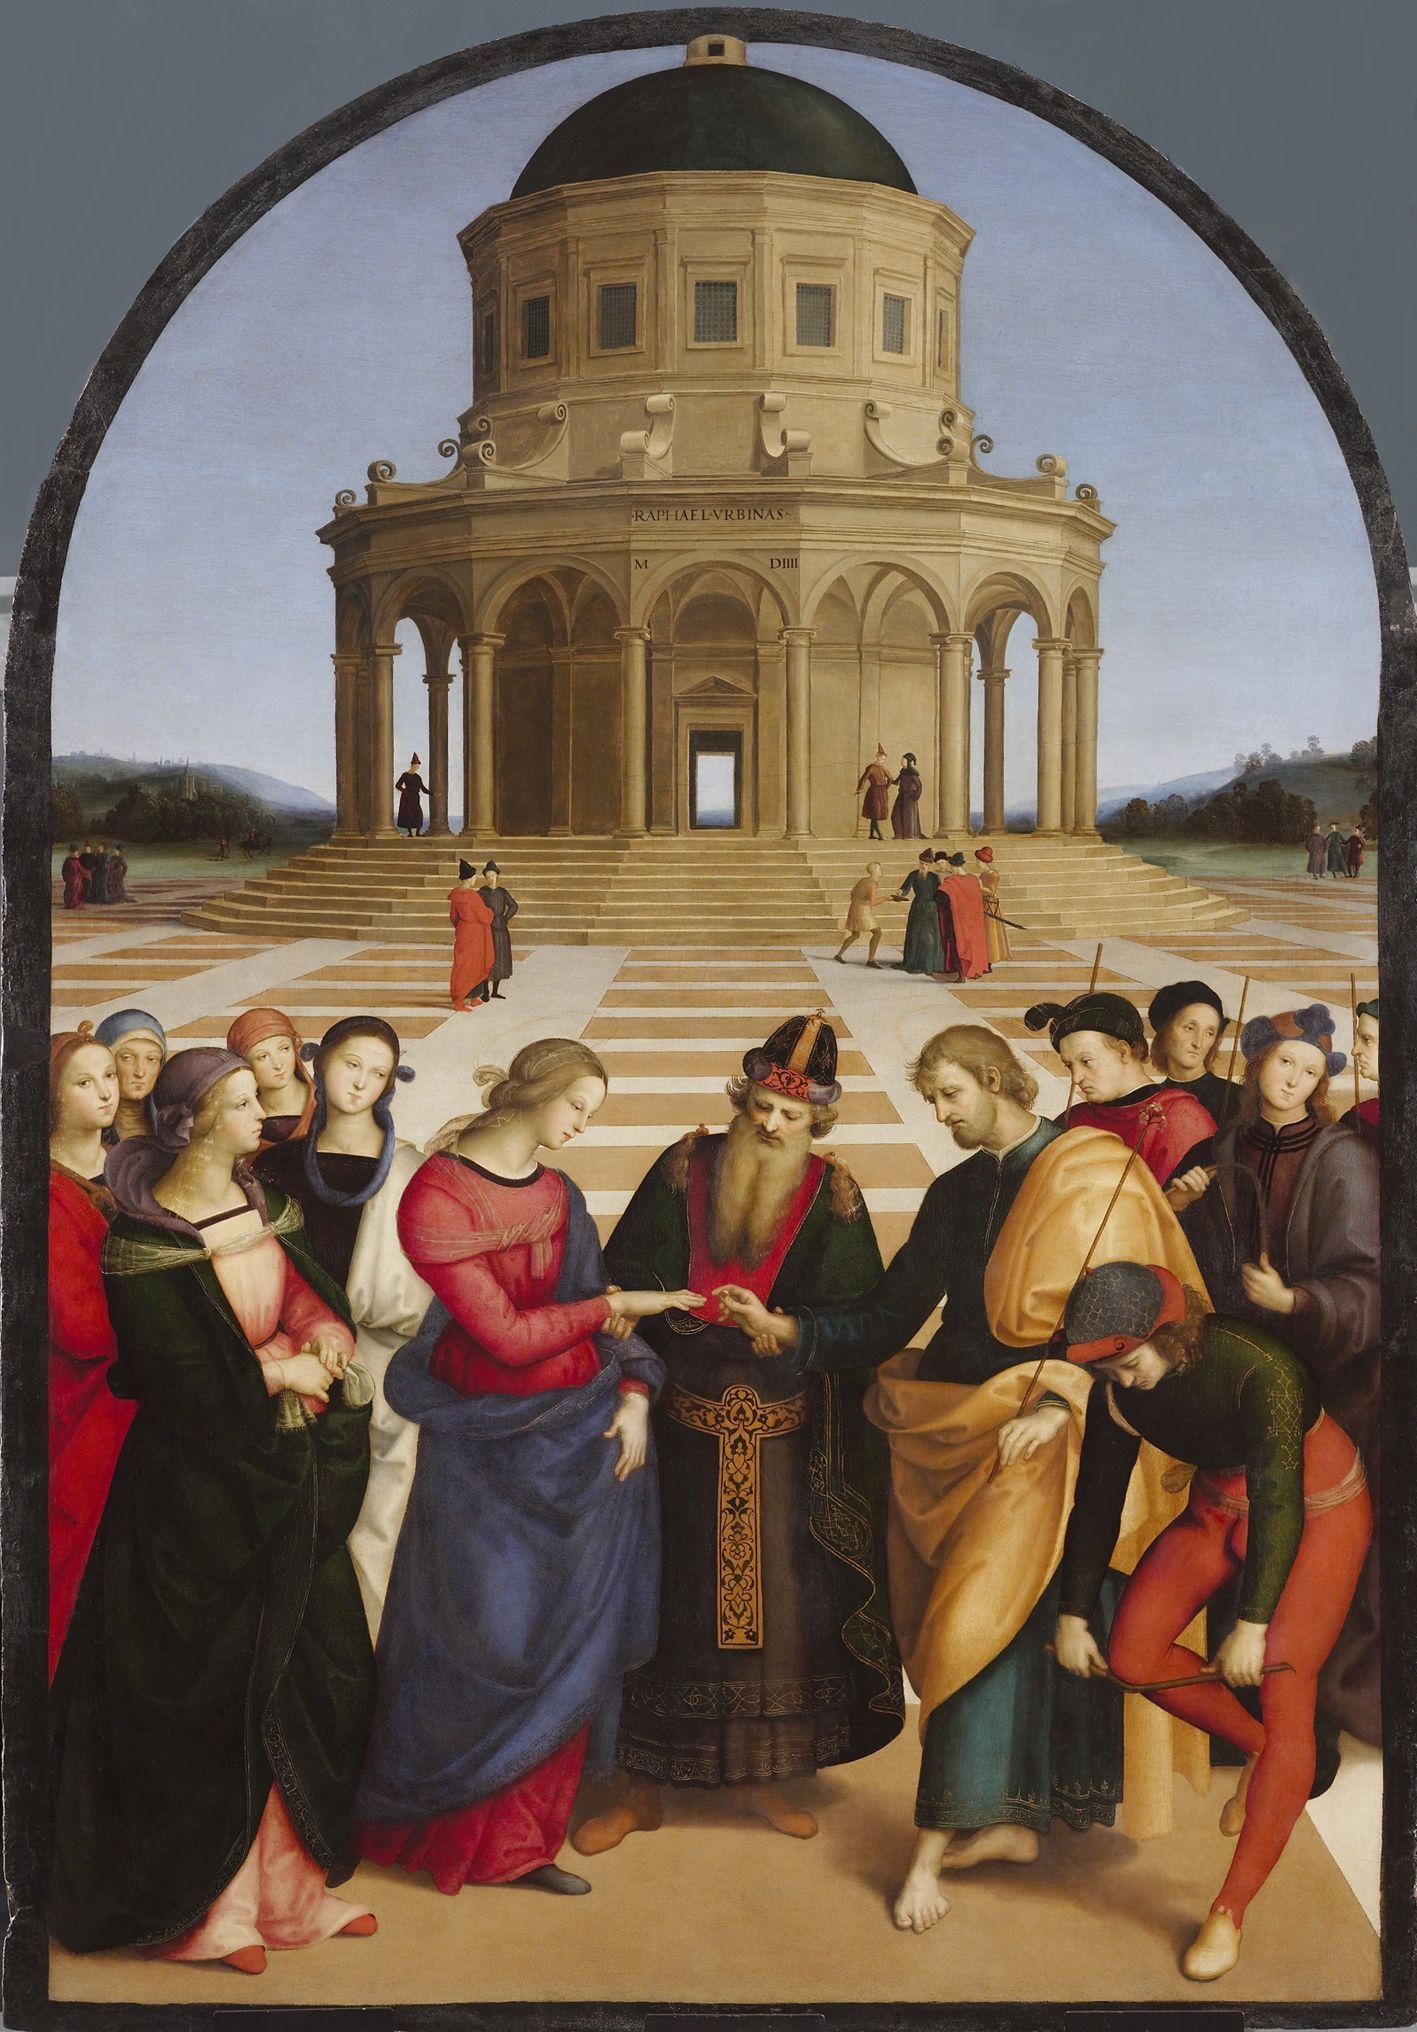 Обручение Богородицы by Raphael Santi - 1504 г. - 170 х 118 см 